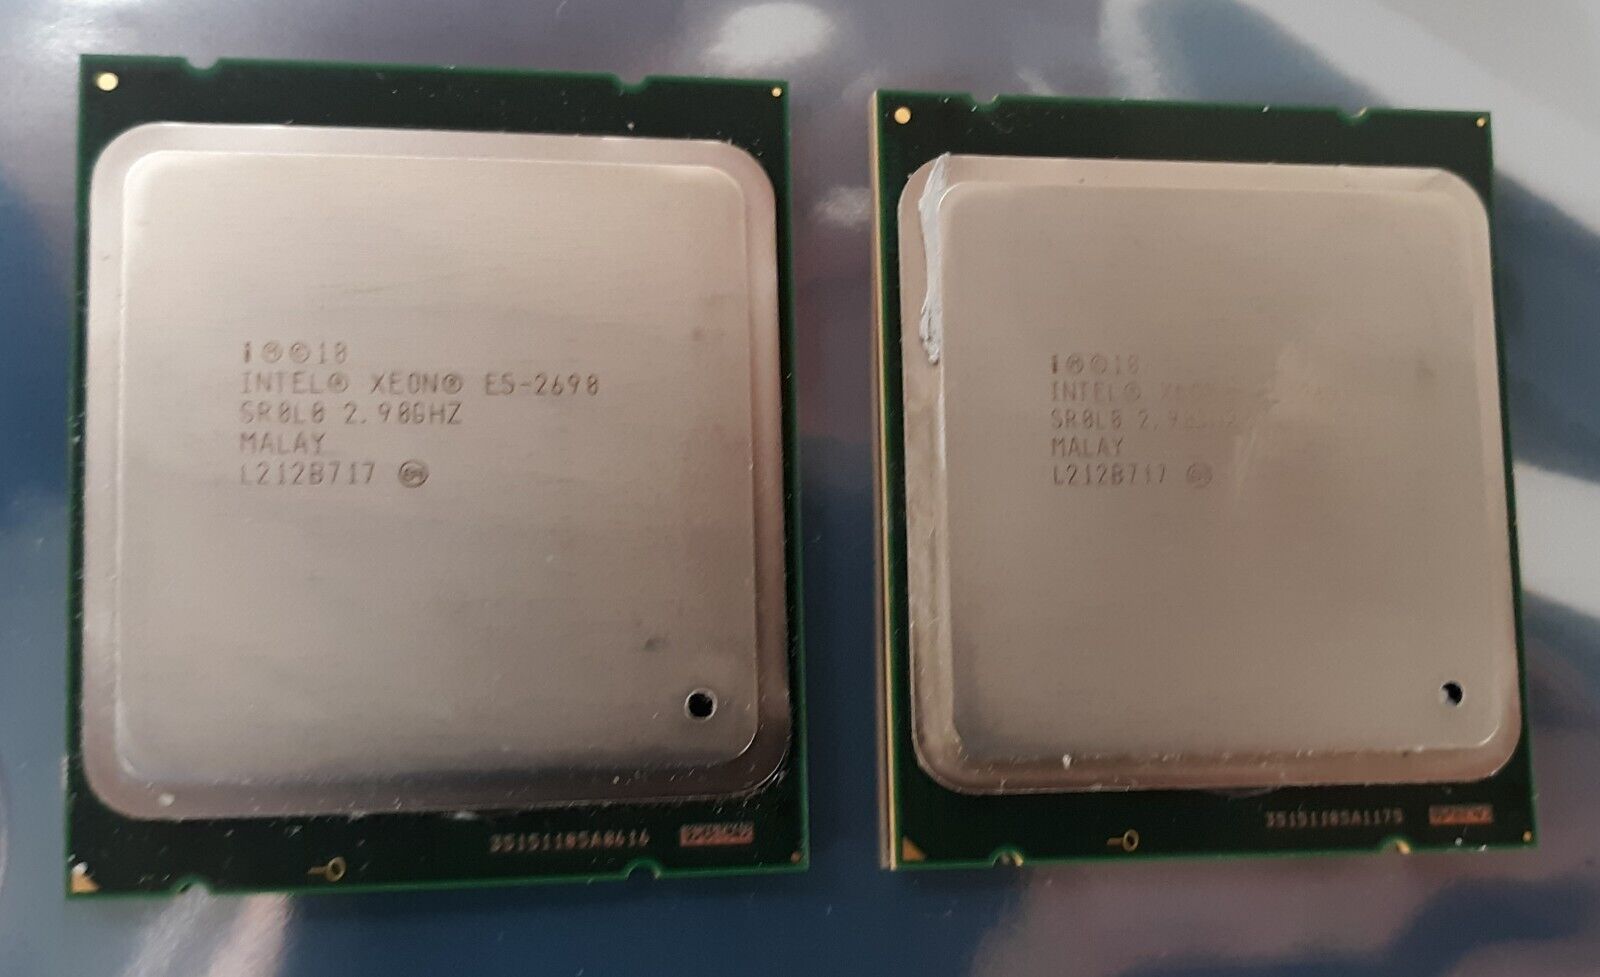 Pair of Intel Xeon E5-2690 SR0L0 2.90GHz 8core 20MB Server Processor